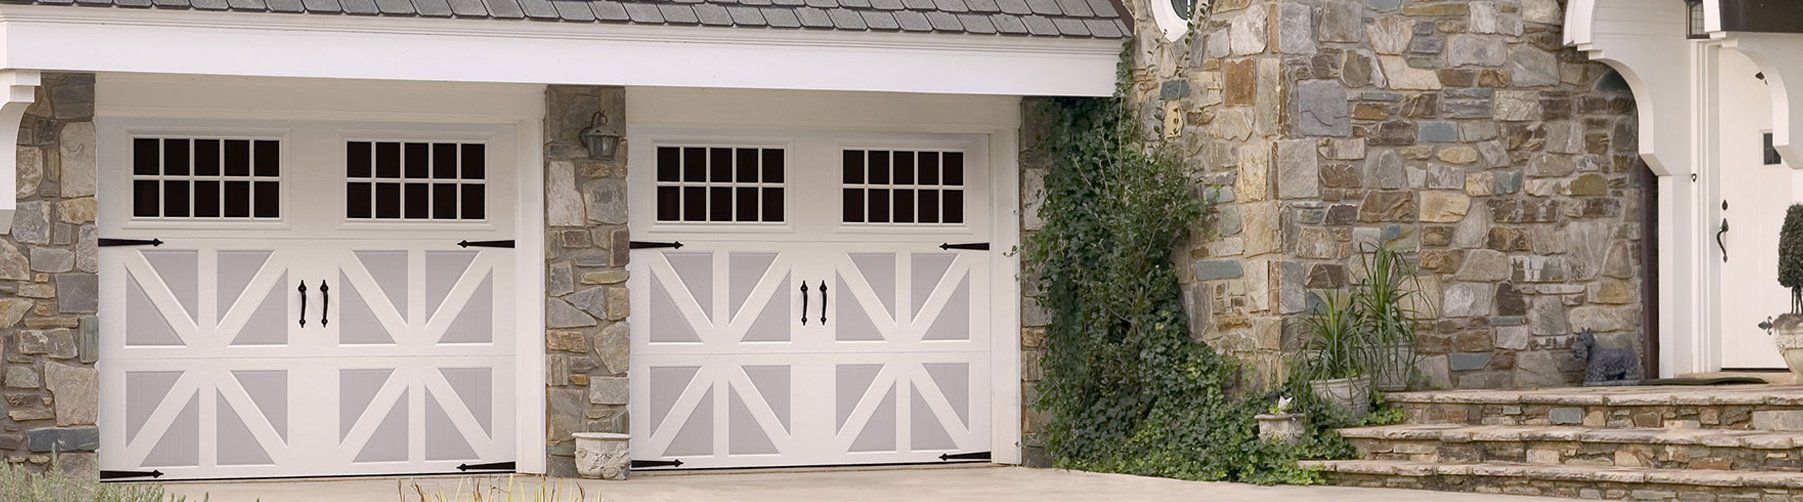 Carriage house garage door